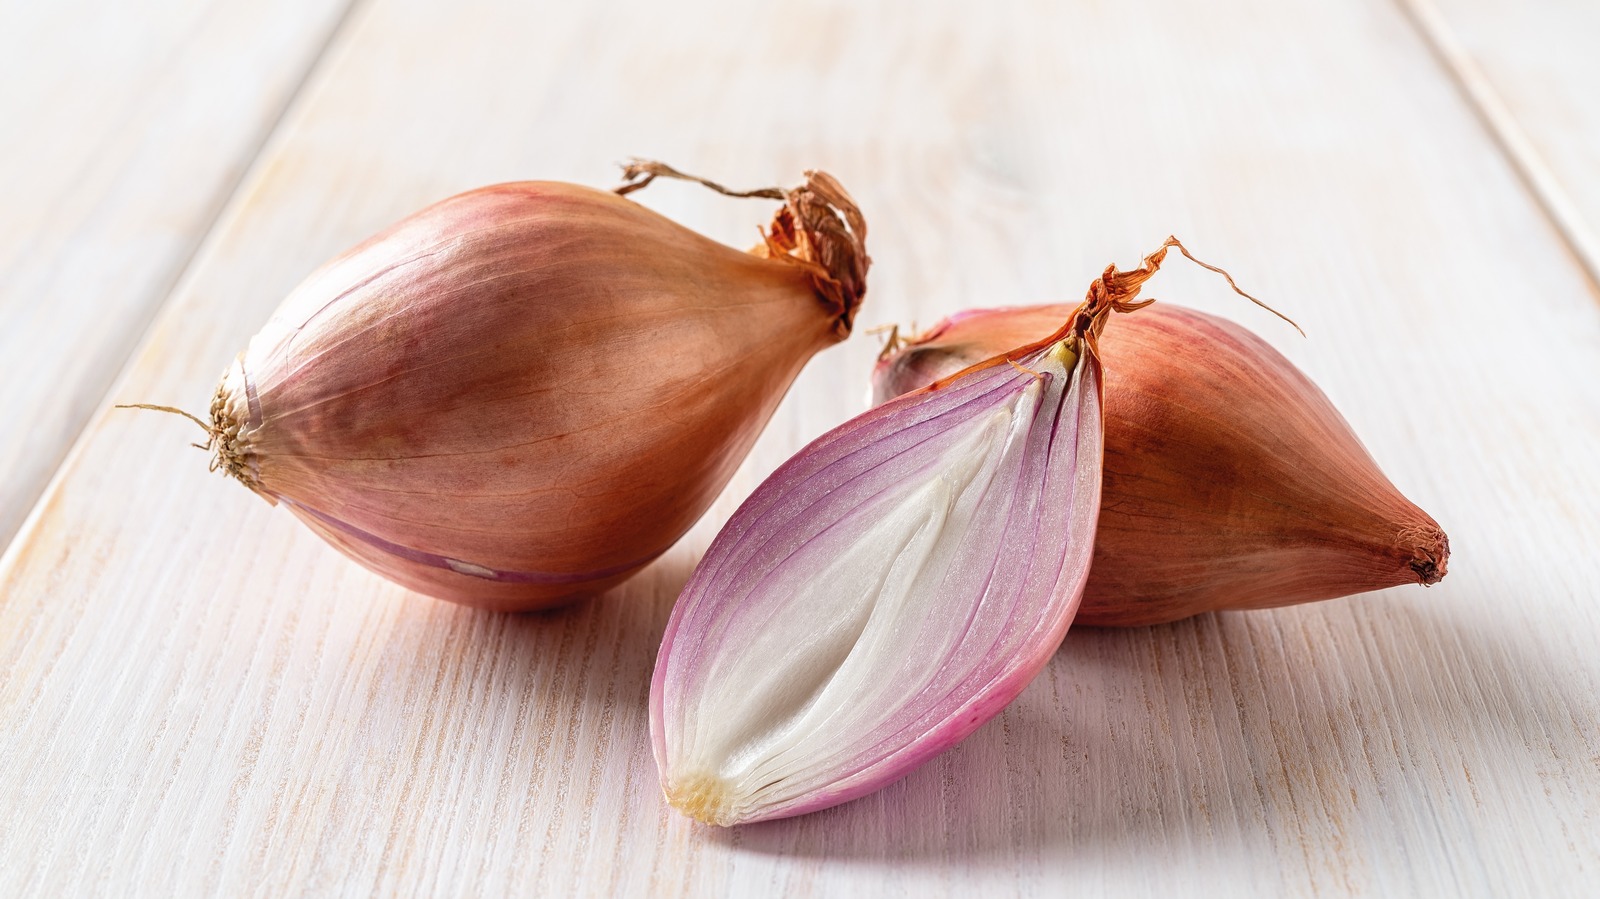 Garlic and Shallot Confit